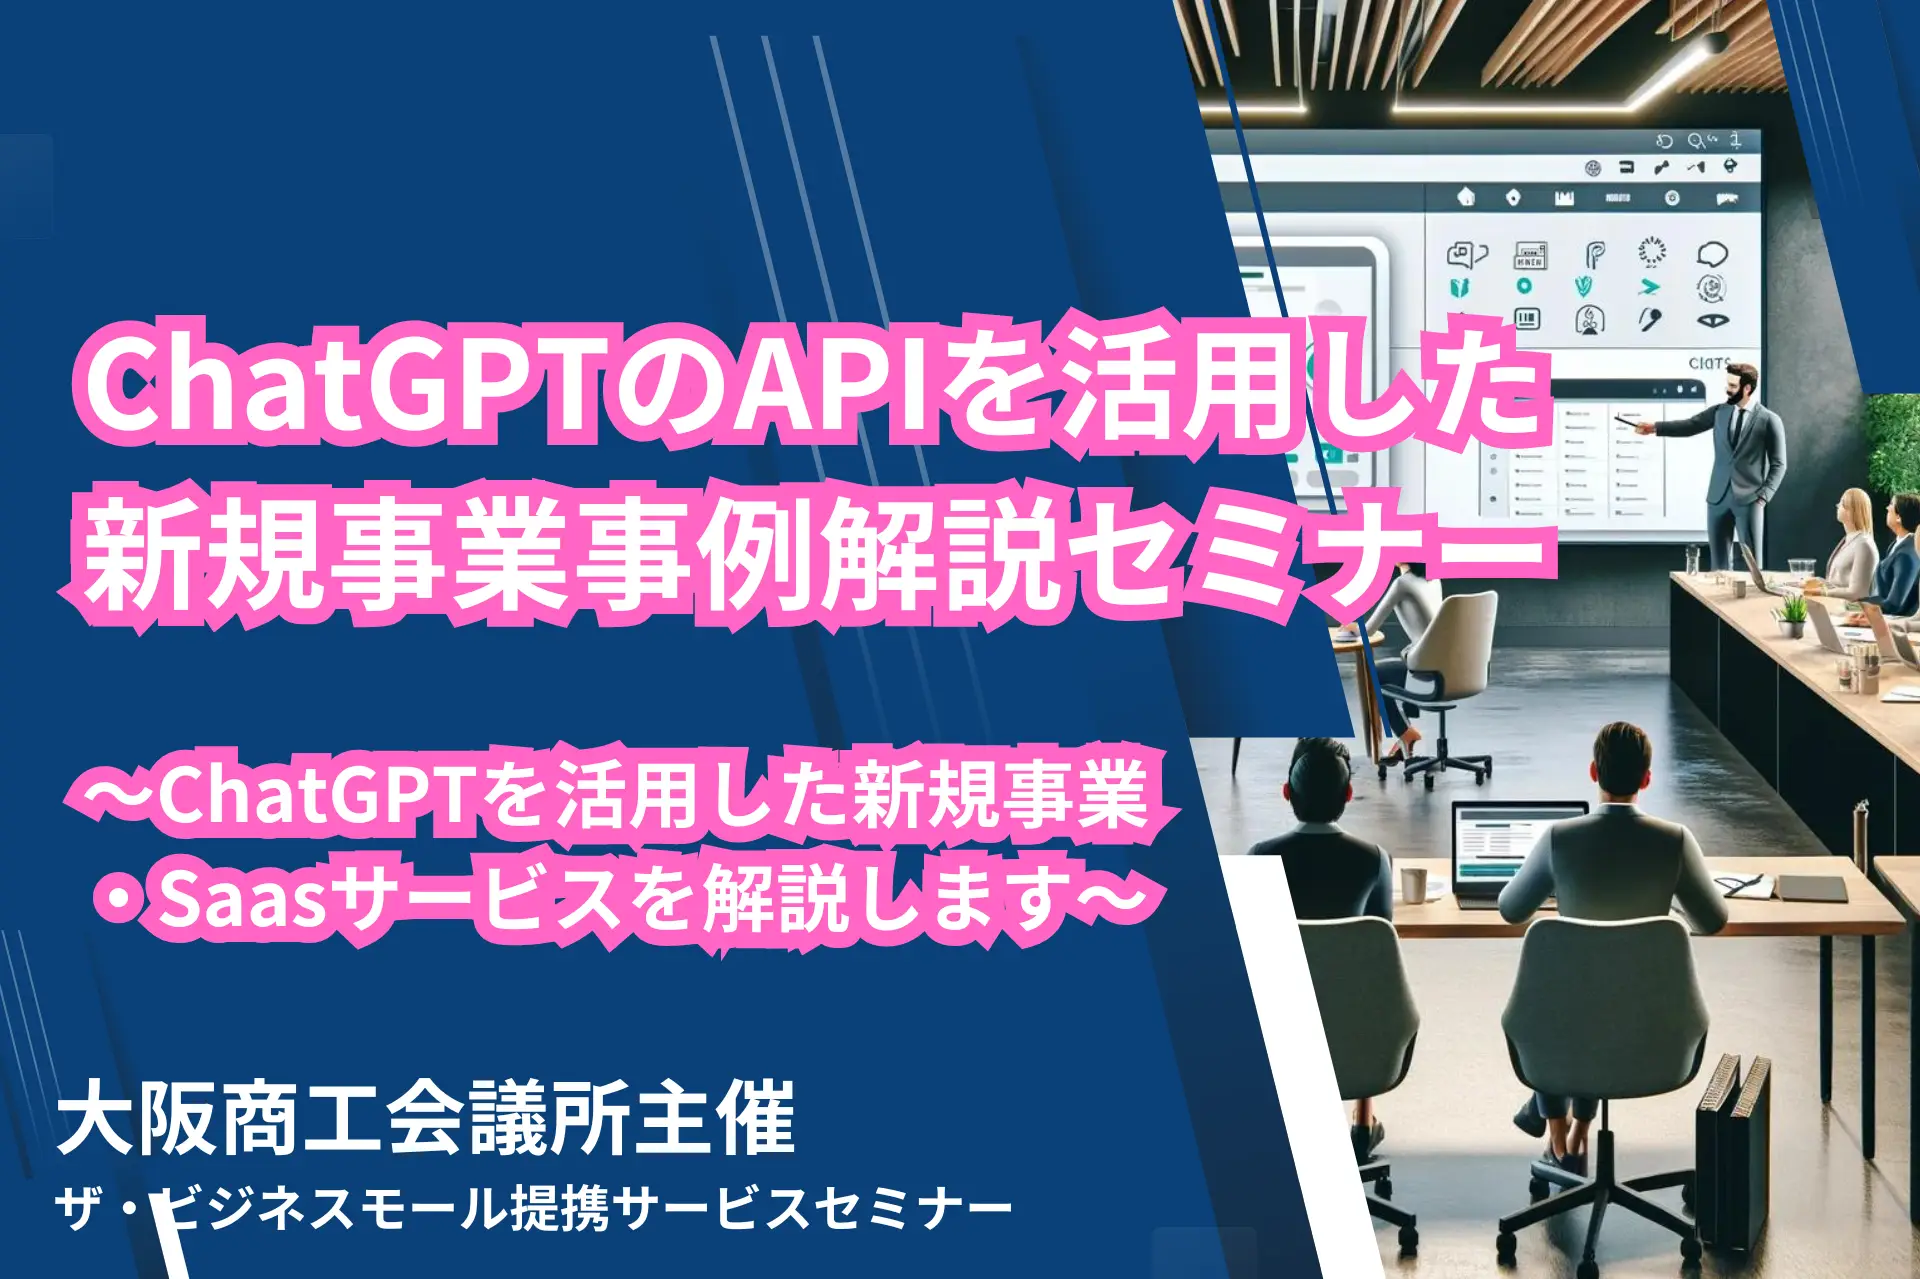 ChatGPTのAPIを活用した新規事業事例解説セミナー～ChatGPTを活用した新規事業・Saasサービスを解説します～